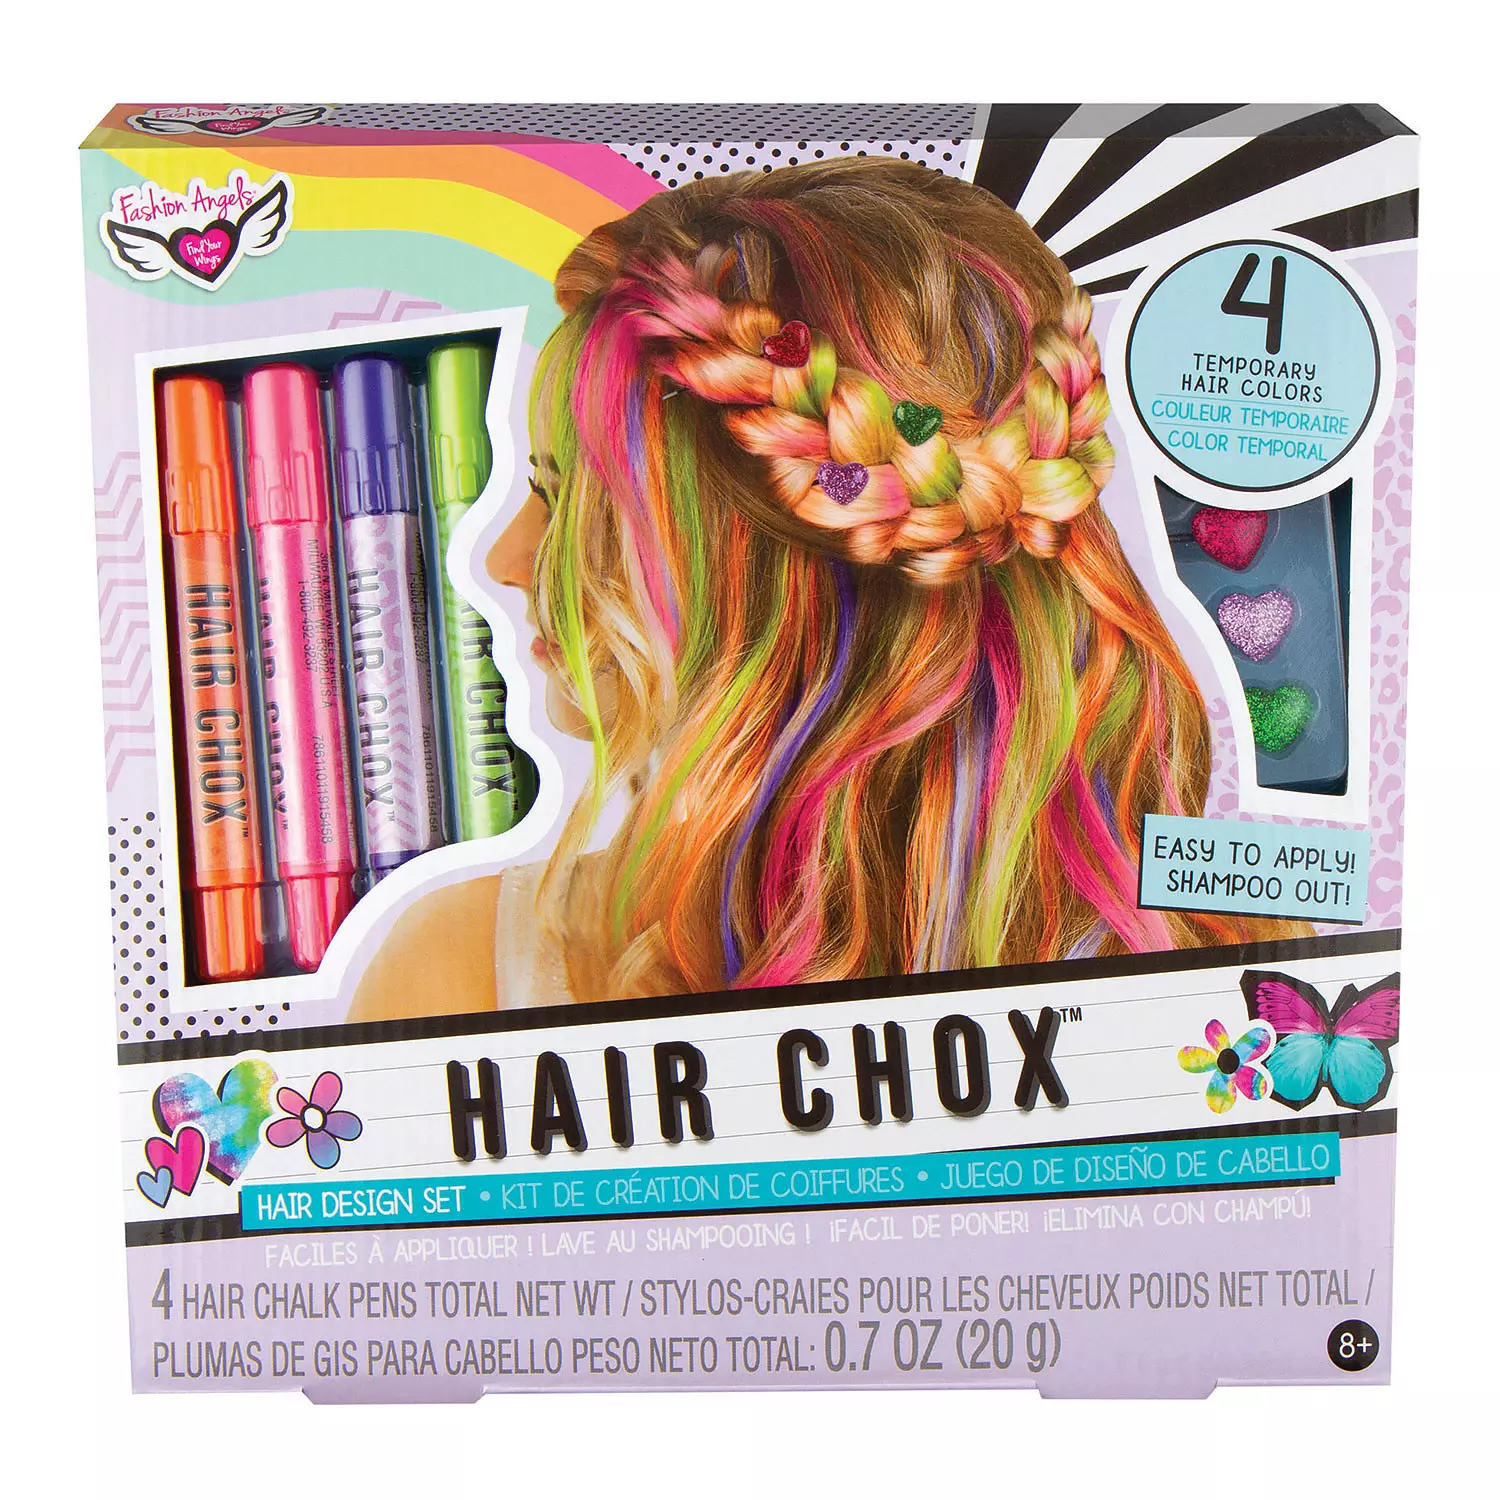 Fashion Angels - Hair Chox, tie-dye hair design set